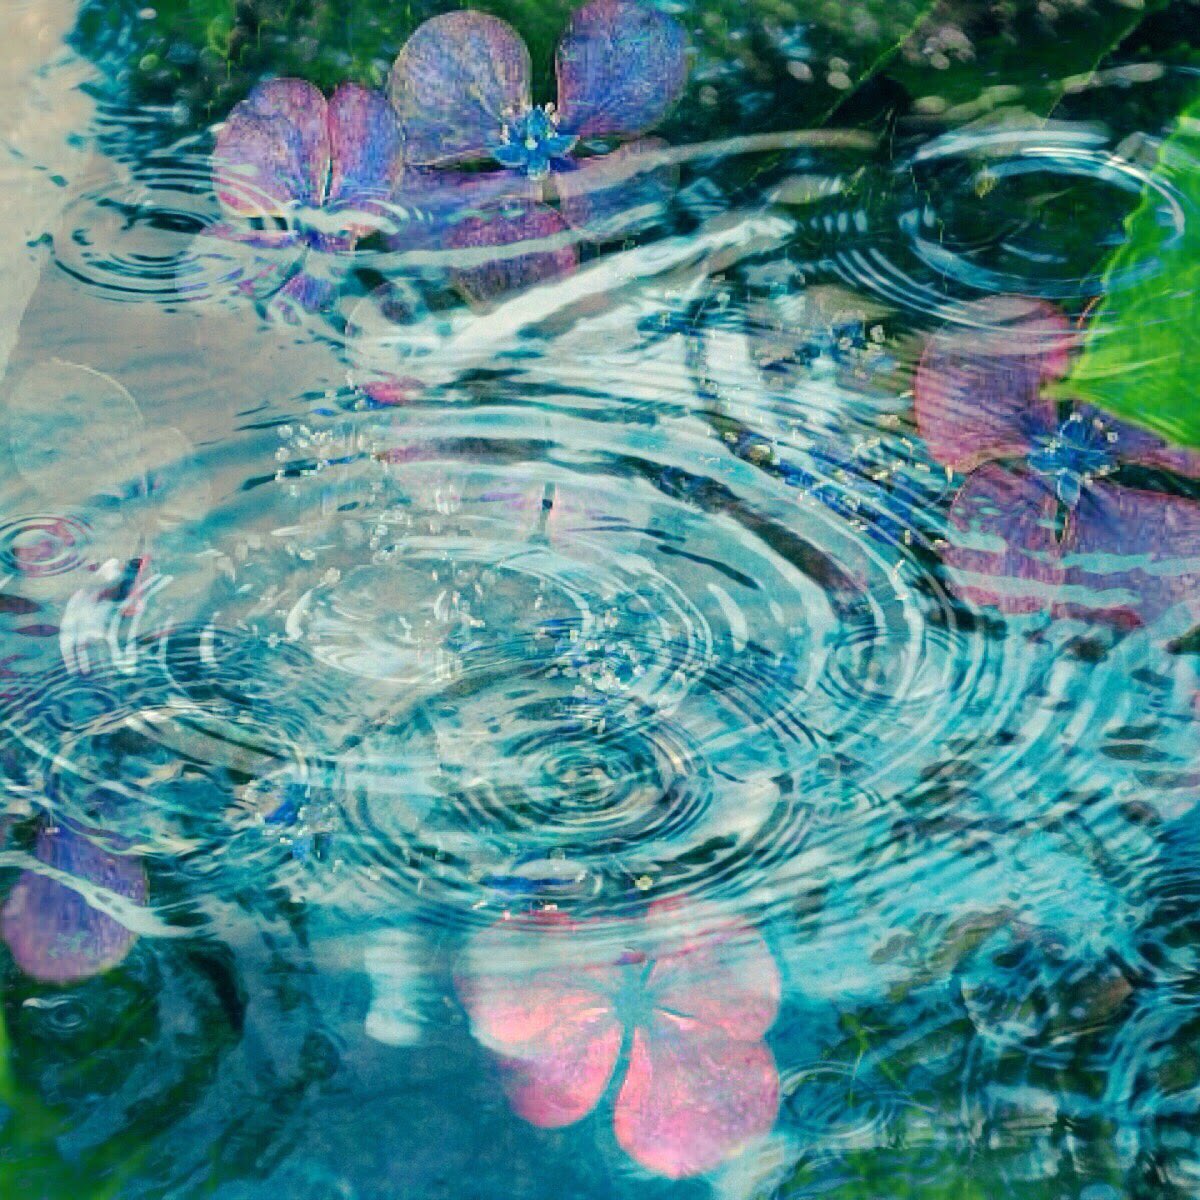 ねおneo 額紫陽花と水面の波紋をmix ˊᵕˋ 再投稿 花の色は移りにけりないたづらに わが身世にふるながめせしまに 小野小町 Japan Kyoto Flower 京都 滋賀 花 写真撮るのが好きな人と繋がりたい 写真 T Co Ckz8zjzsa9 Twitter